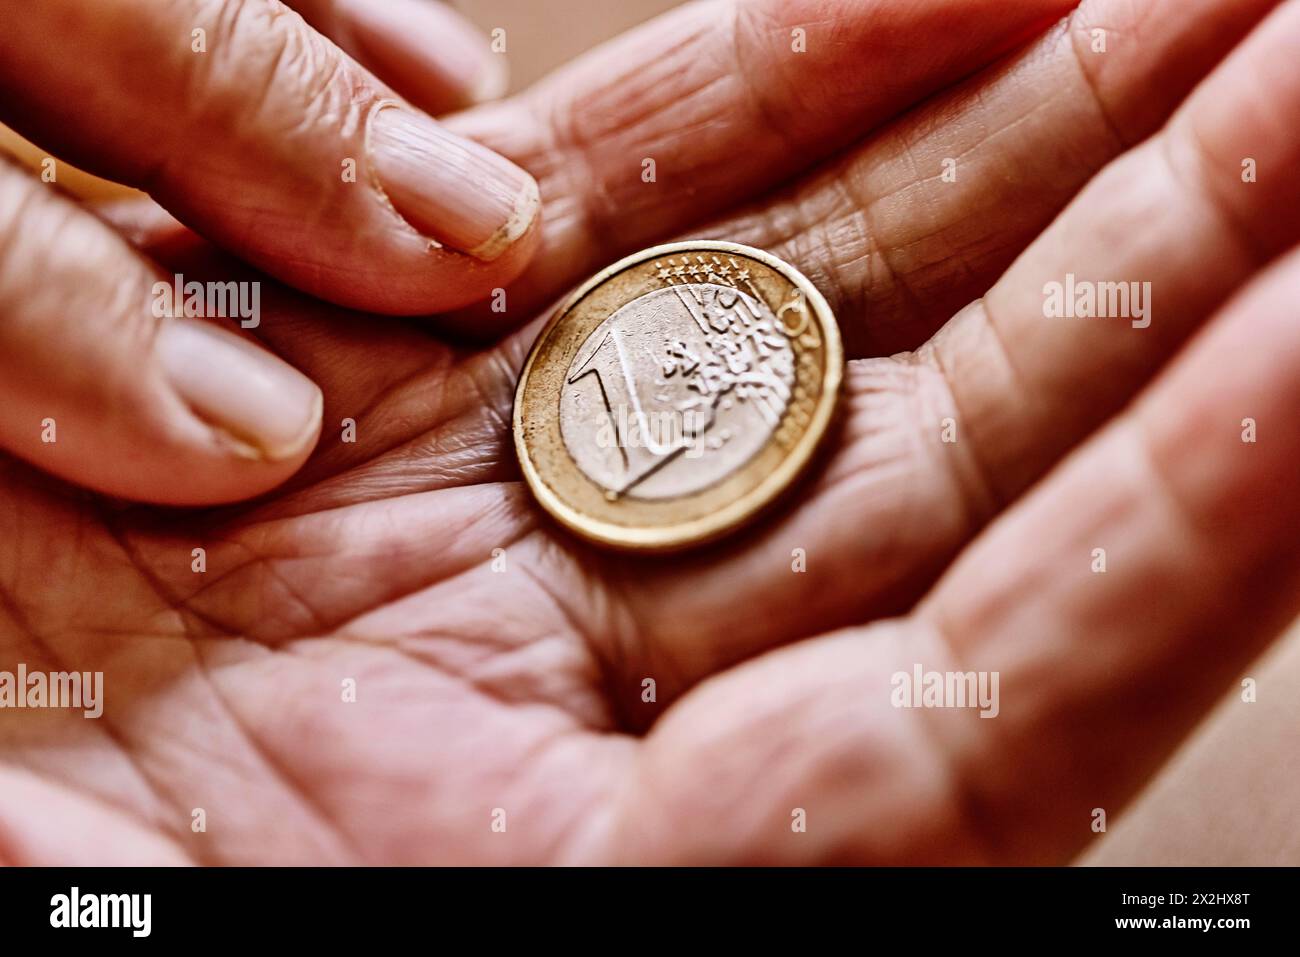 Une pièce en euros dans la main ridée d'un vieillard, symbolisant la pauvreté et la pauvreté chez les personnes âgées Banque D'Images